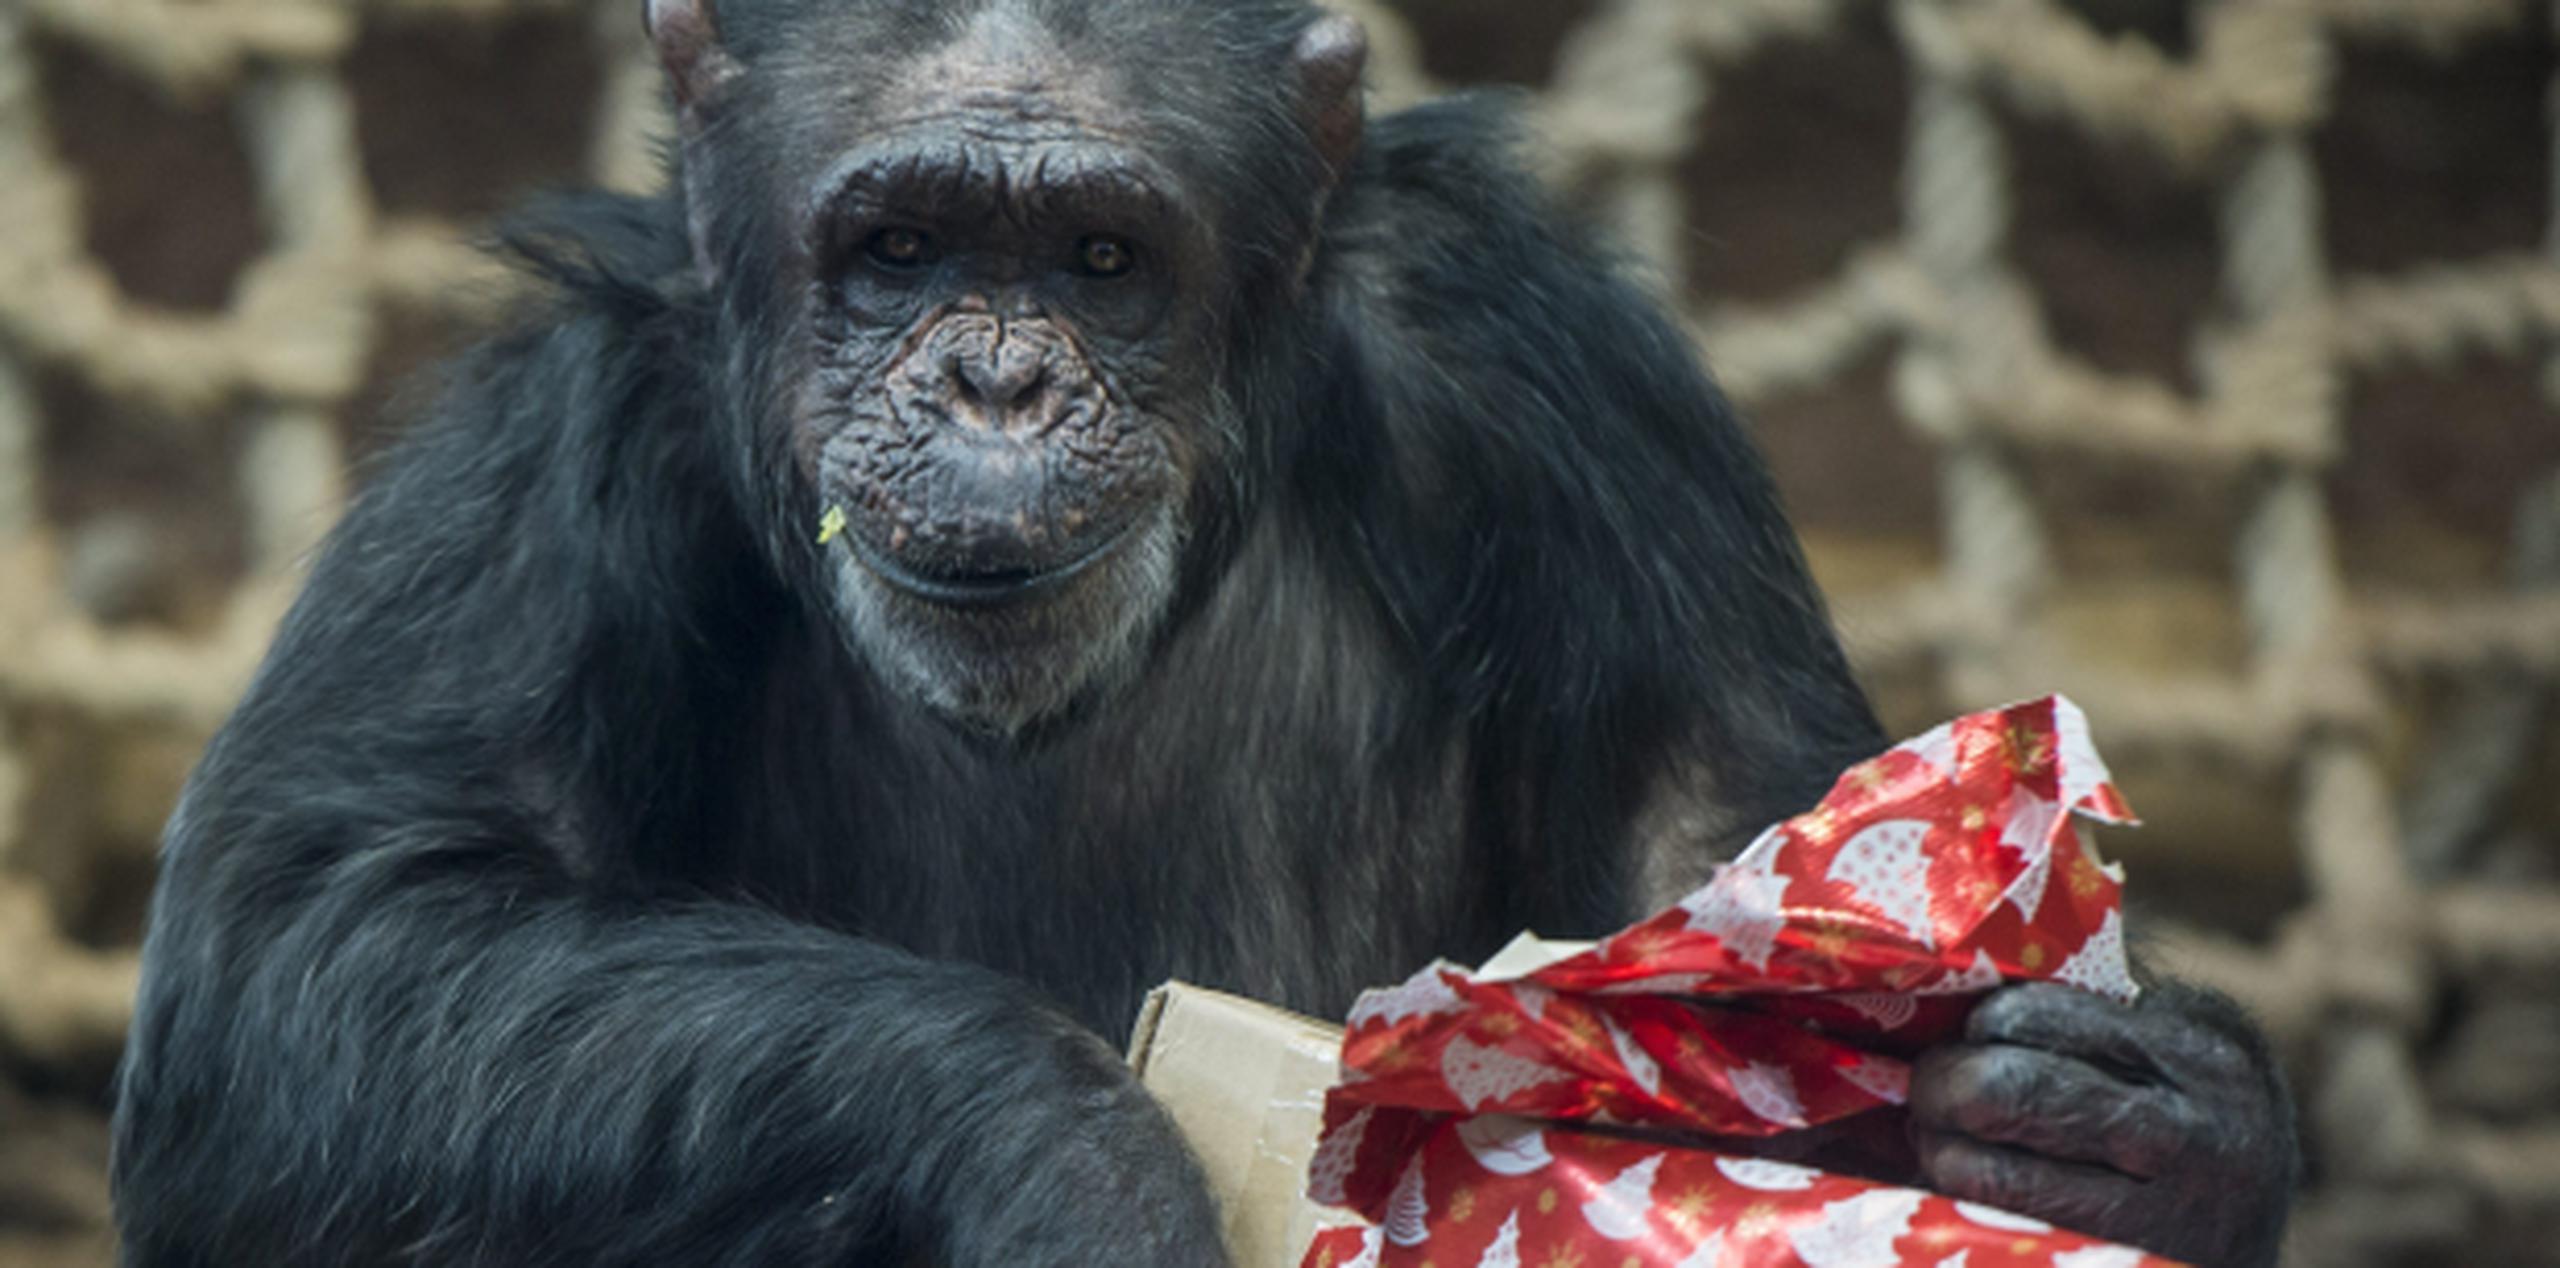 Los expertos concluyen que los chimpancés no presentan actitudes altruistas o vengativas por naturaleza, sino que solo aparecen cuando "anticipan algún tipo de ventaja para ellos". (Foto/Prensa Asociada)